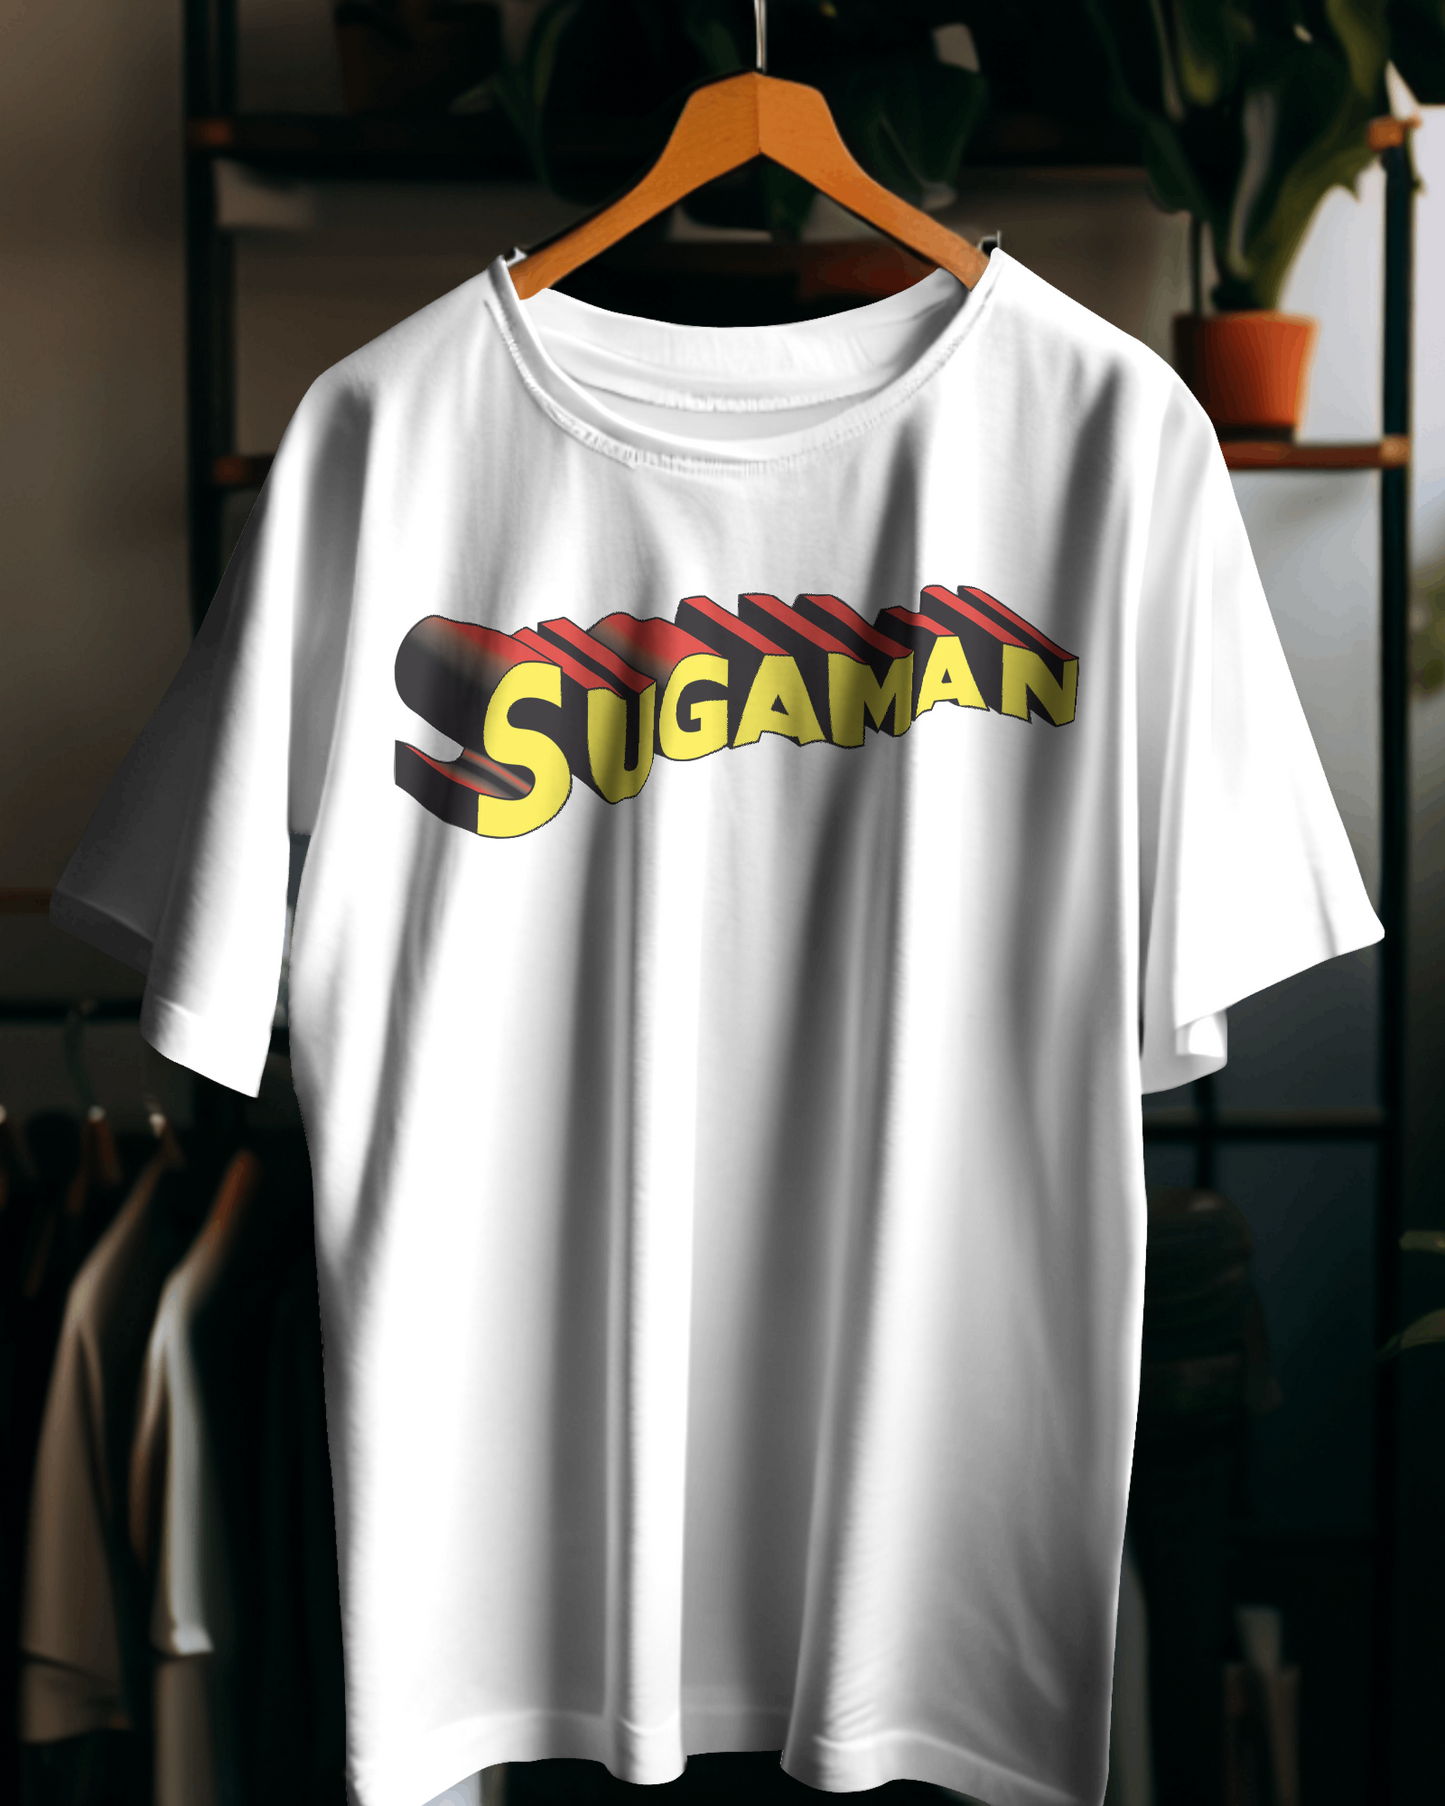 Maglietta vari colori, manica corta, e con stampa Sugaman